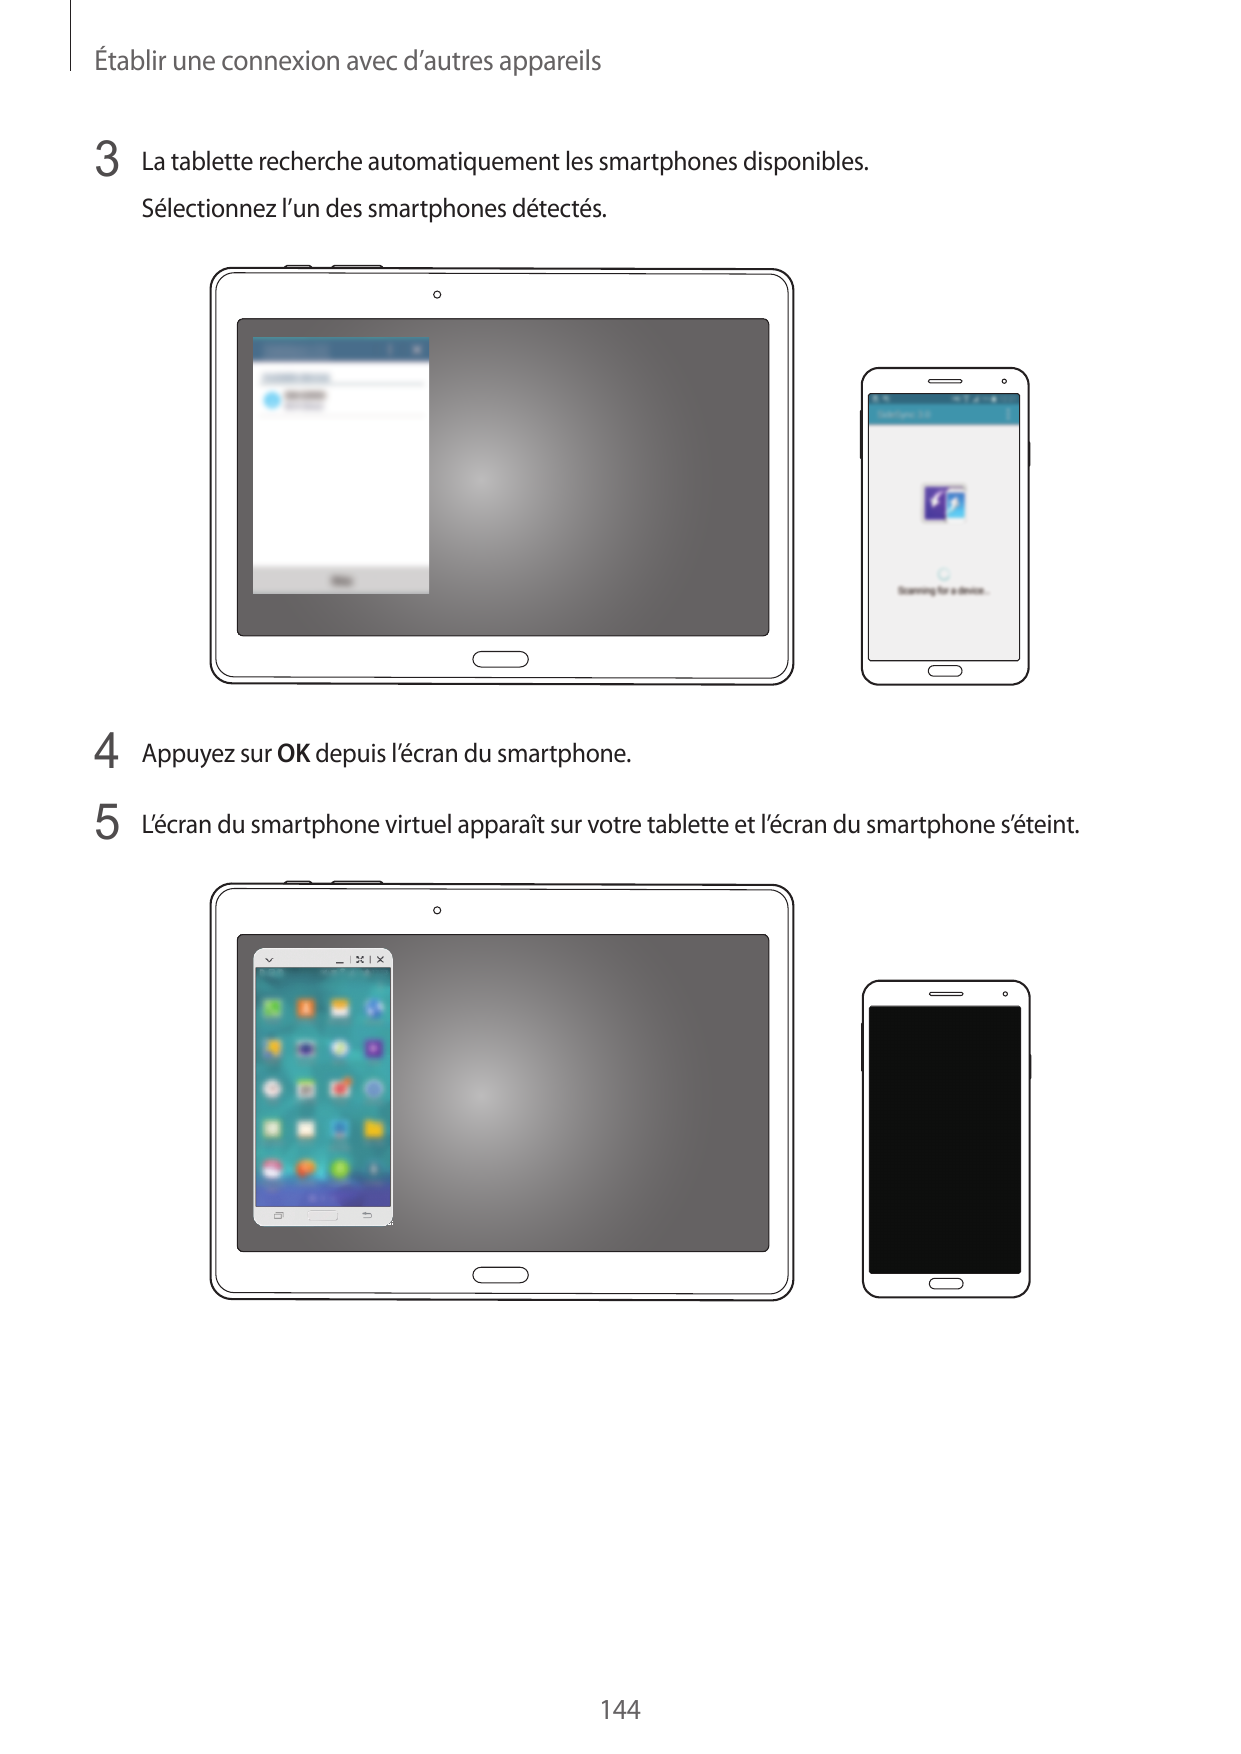 Établir une connexion avec d’autres appareils3 La tablette recherche automatiquement les smartphones disponibles.Sélectionnez l’